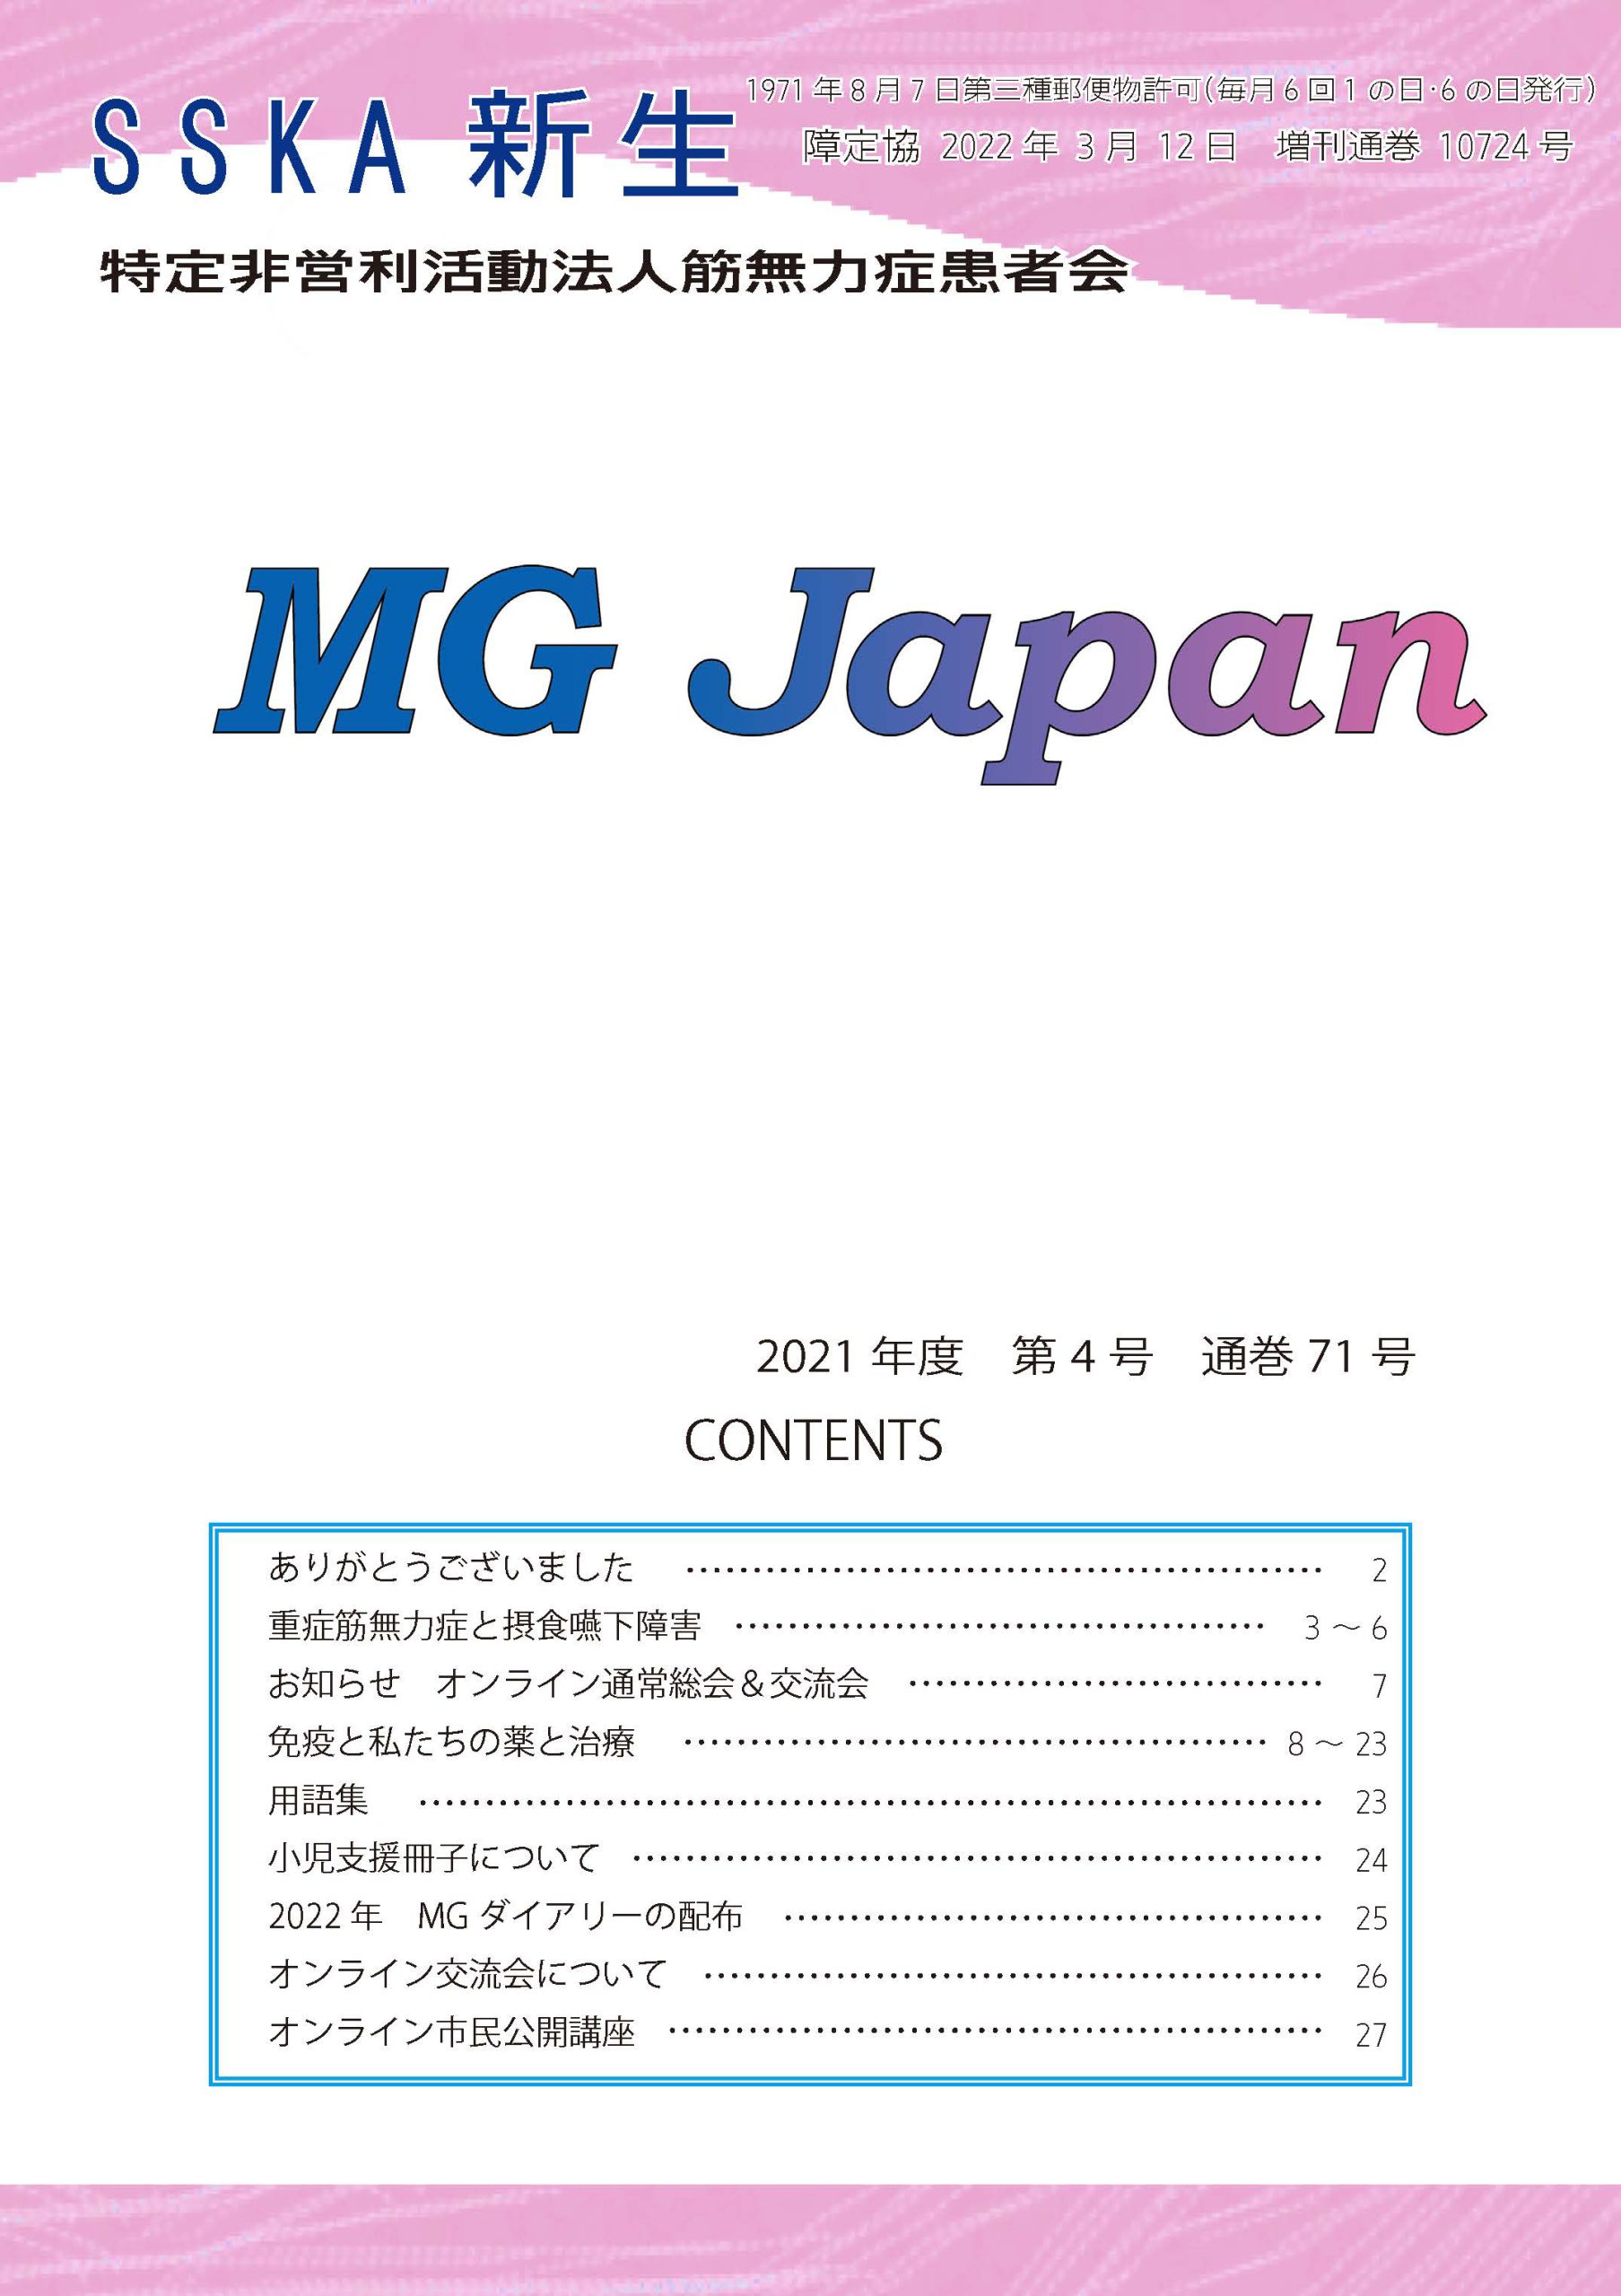 会報新生「MG Japan71号」